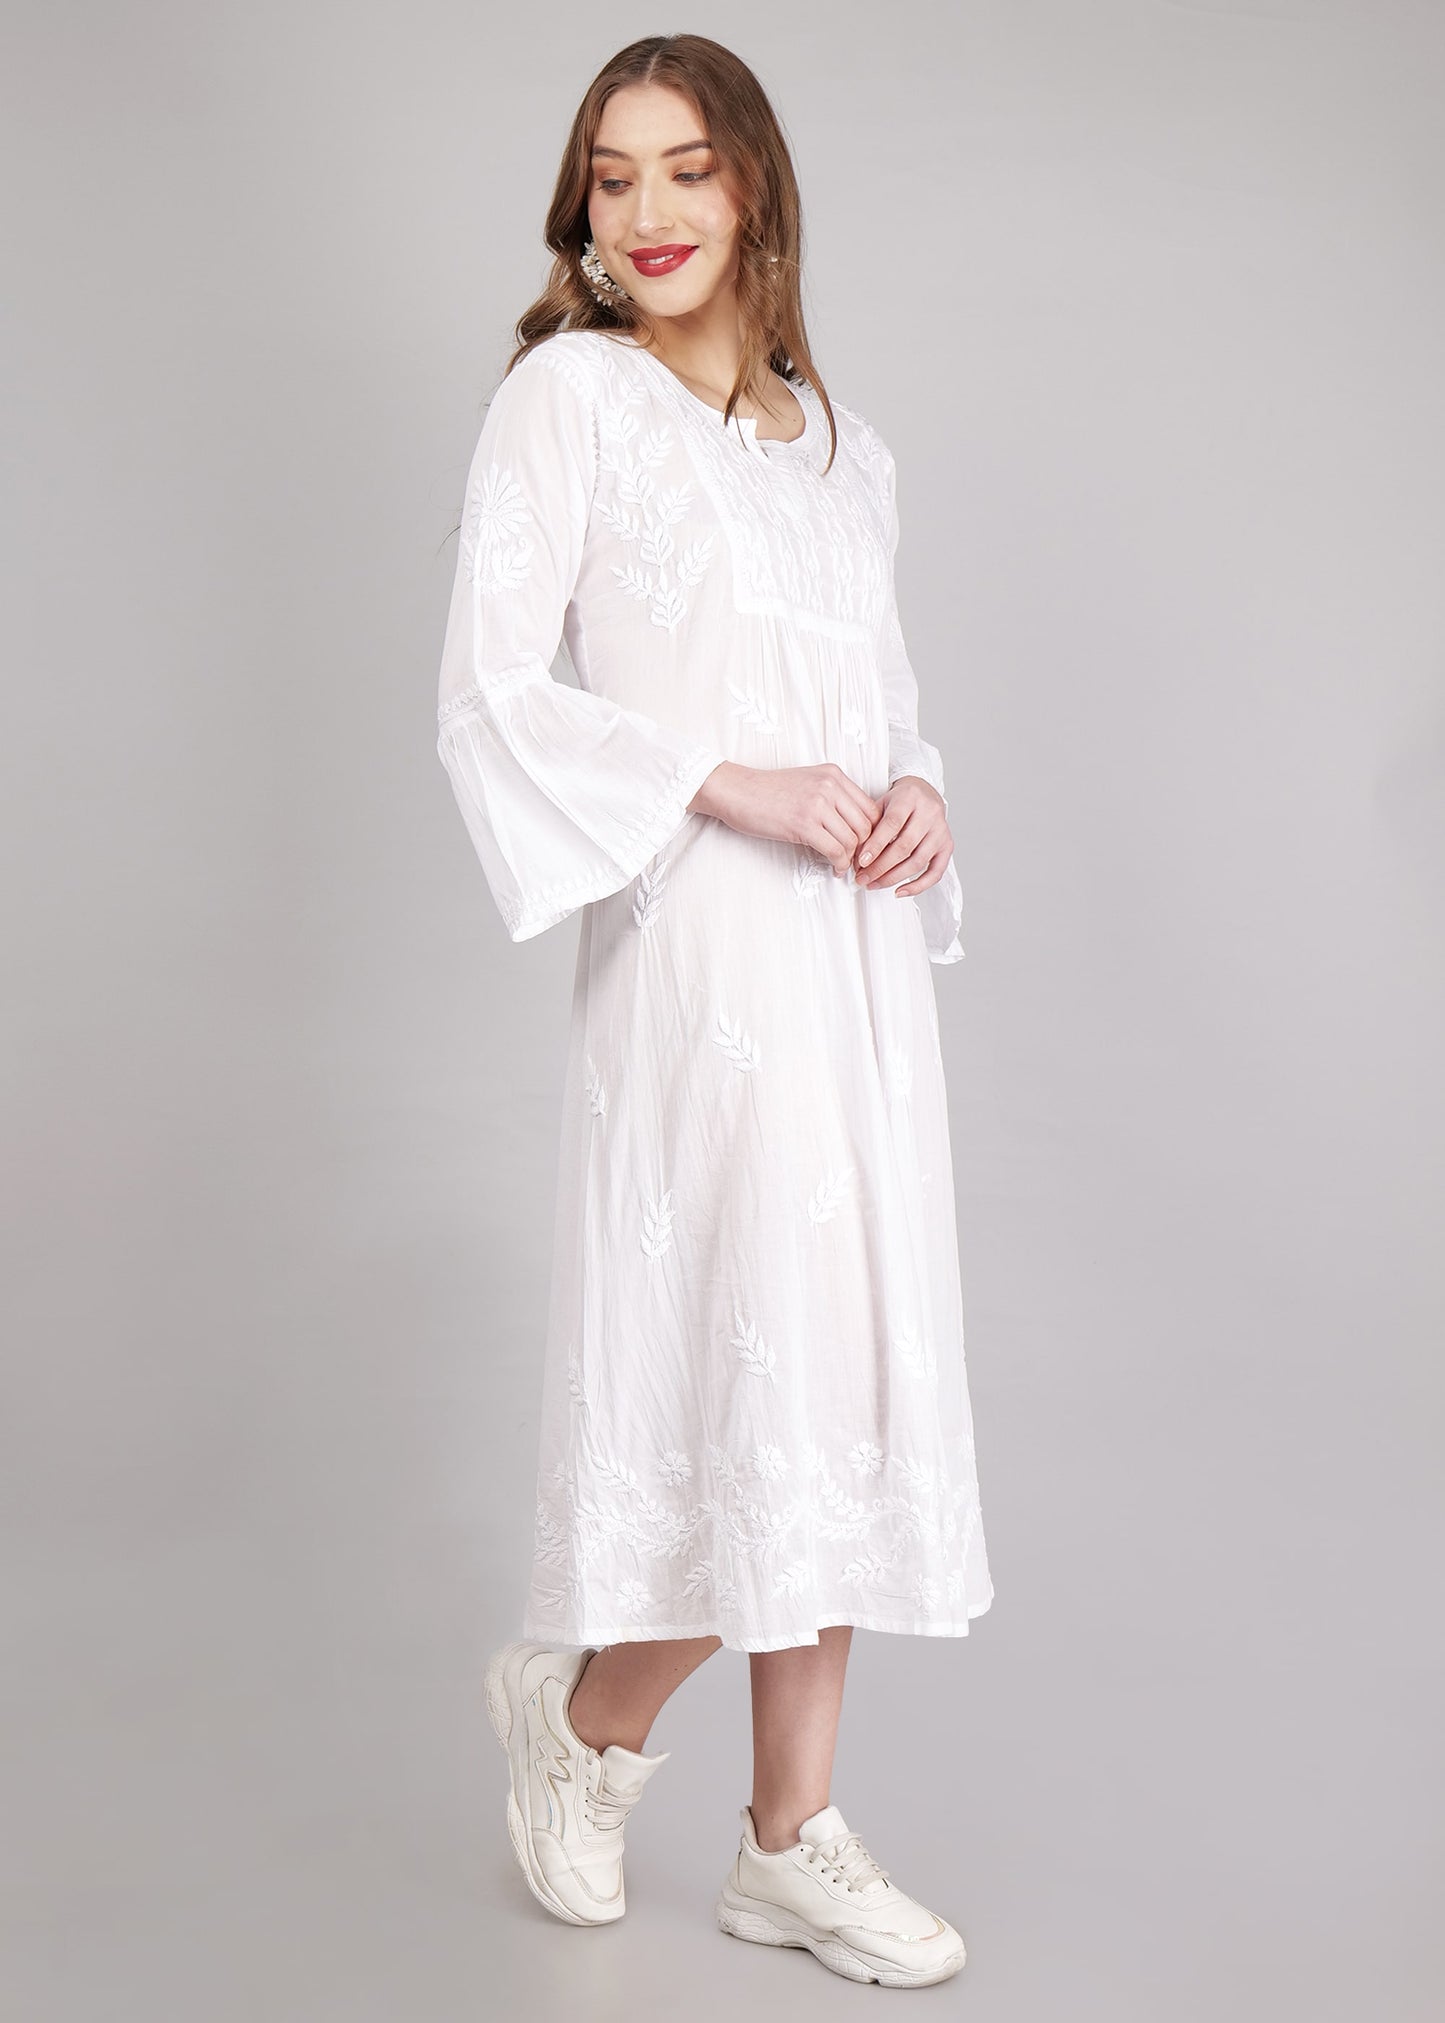 Mulmul Hand Embroidered Knee length Chikankari Dress White